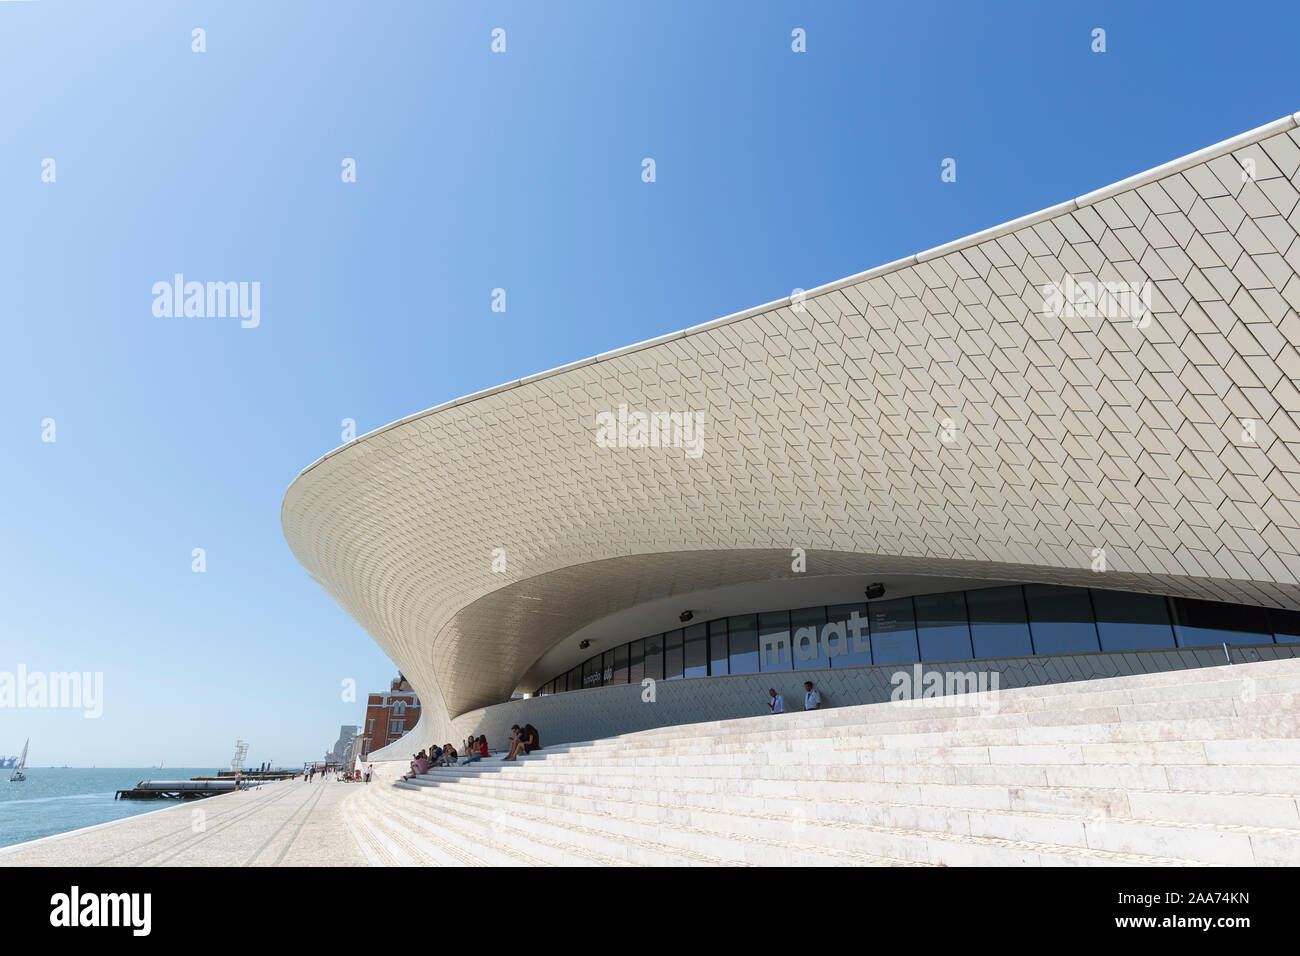 L'avant du Musée d'art, d'architecture et de la technologie (MAAT) avec le Tage par le côté dans le district de Belém à Lisbonne, Portugal. Banque D'Images